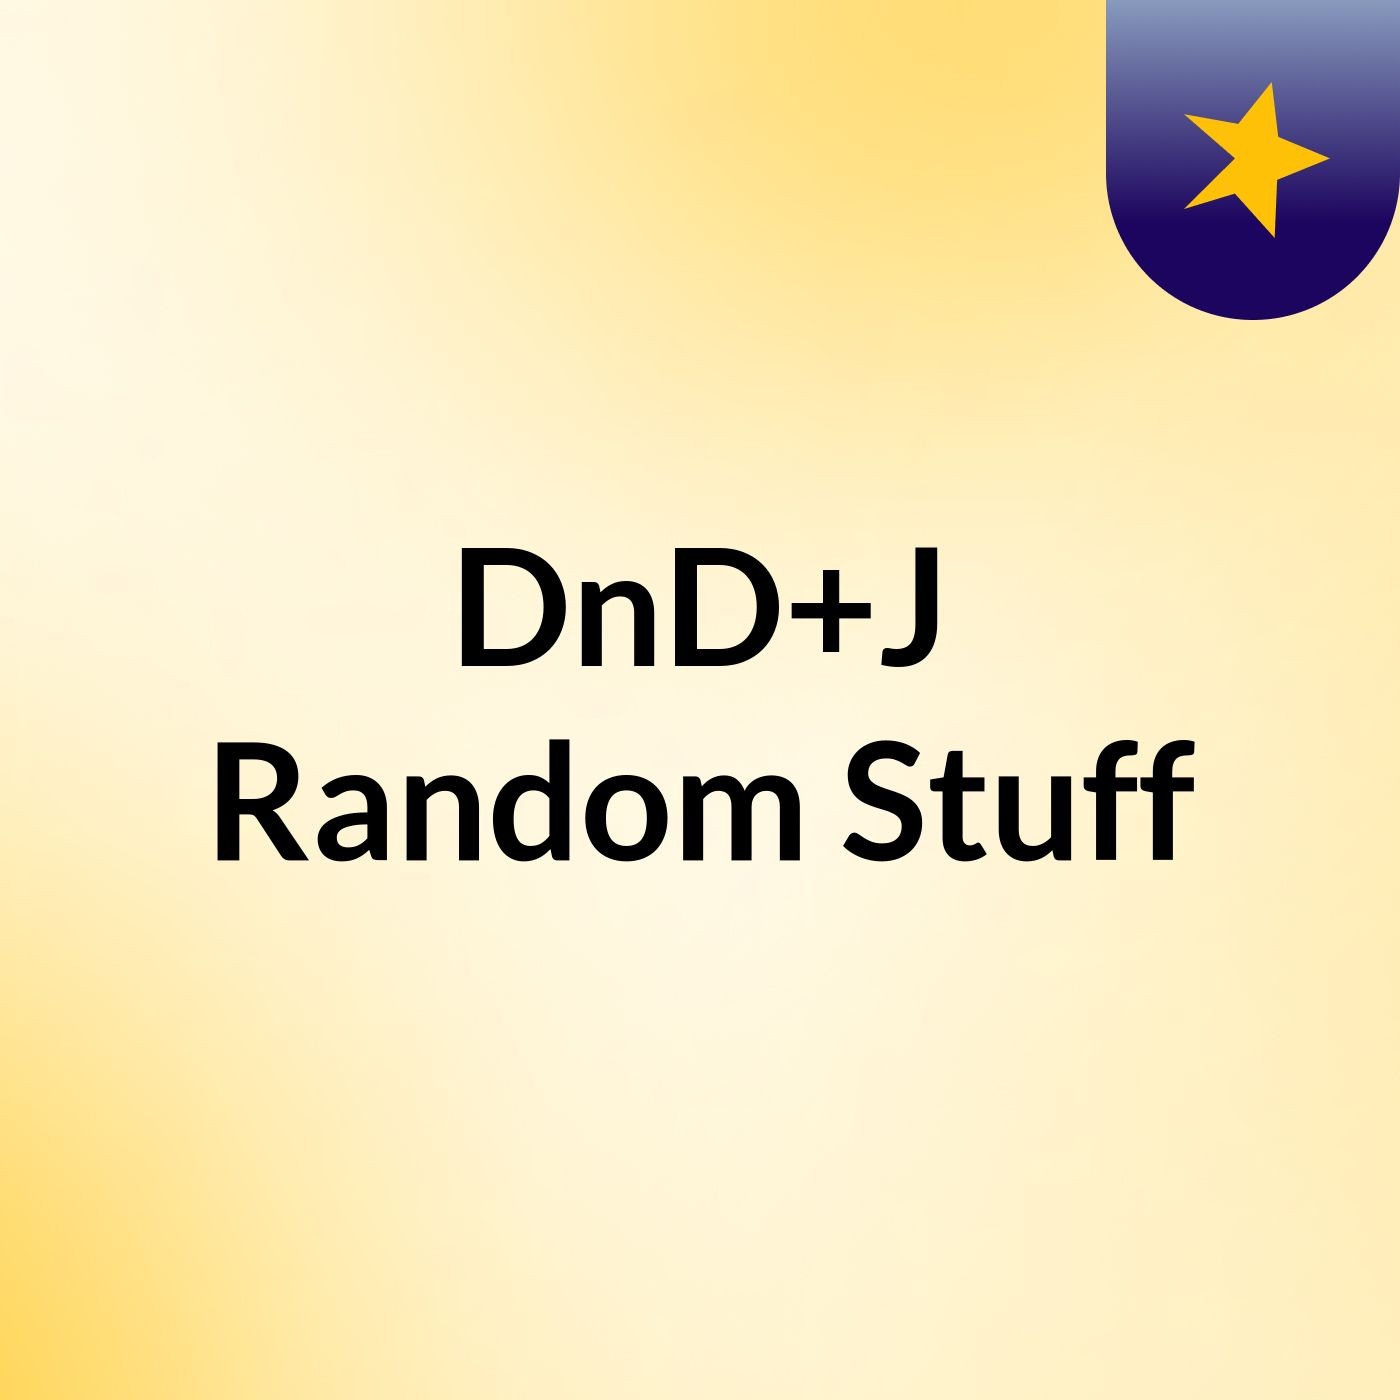 DnD+J Random Stuff